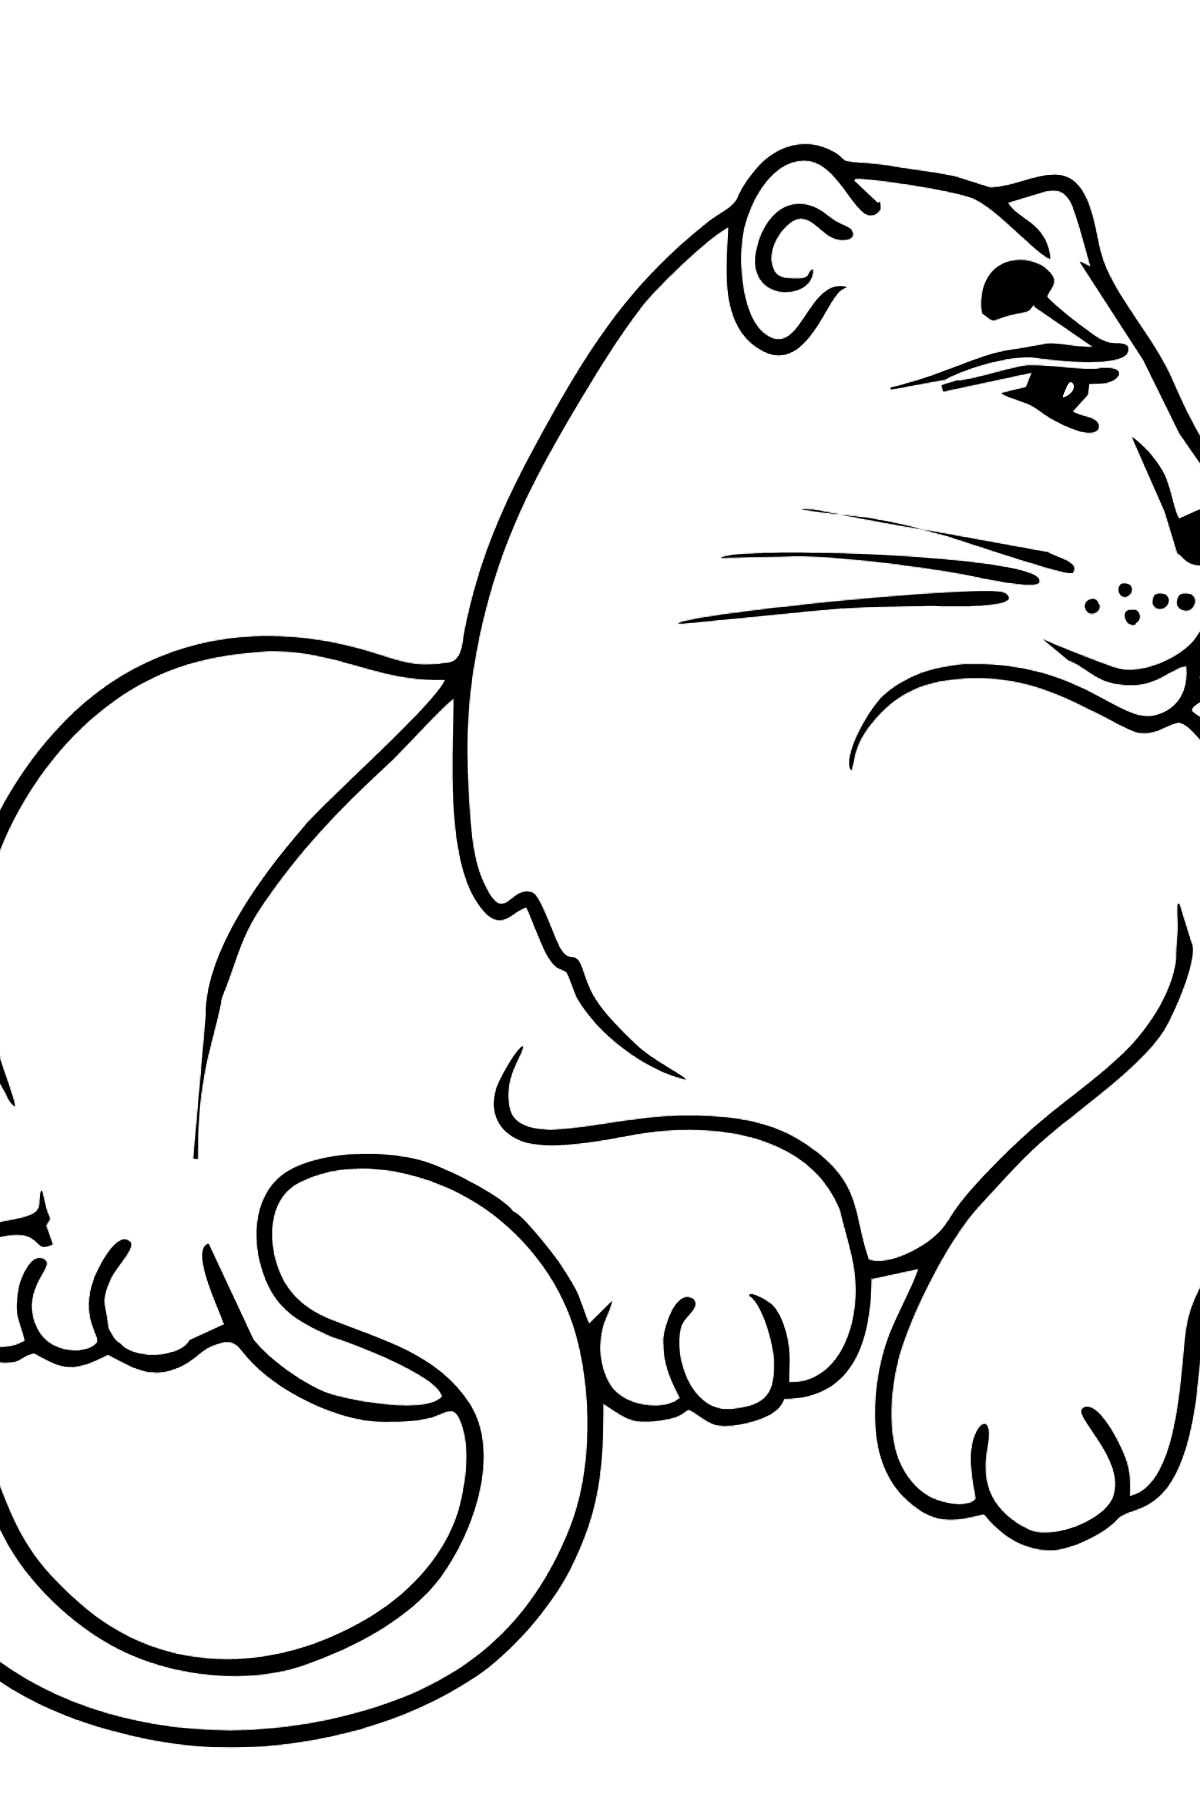 Desenho para colorir de Pantera - Imagens para Colorir para Crianças